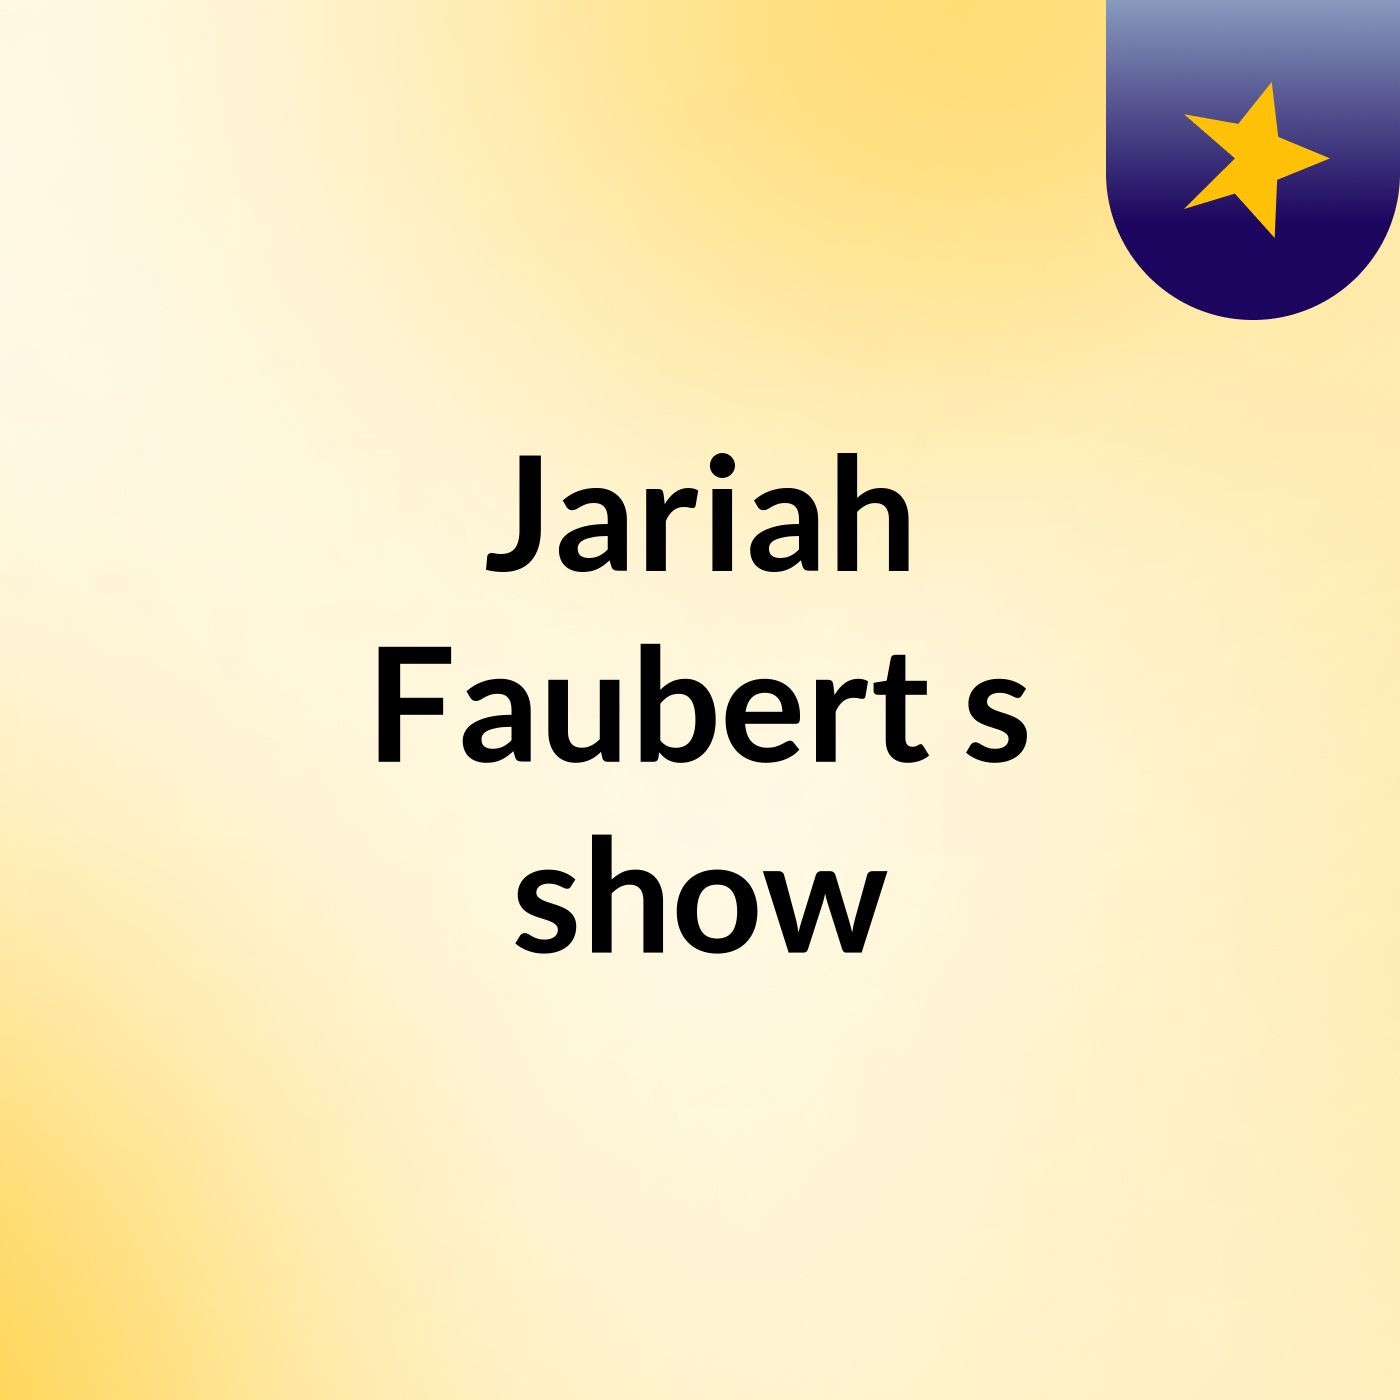 Jariah Faubert's show